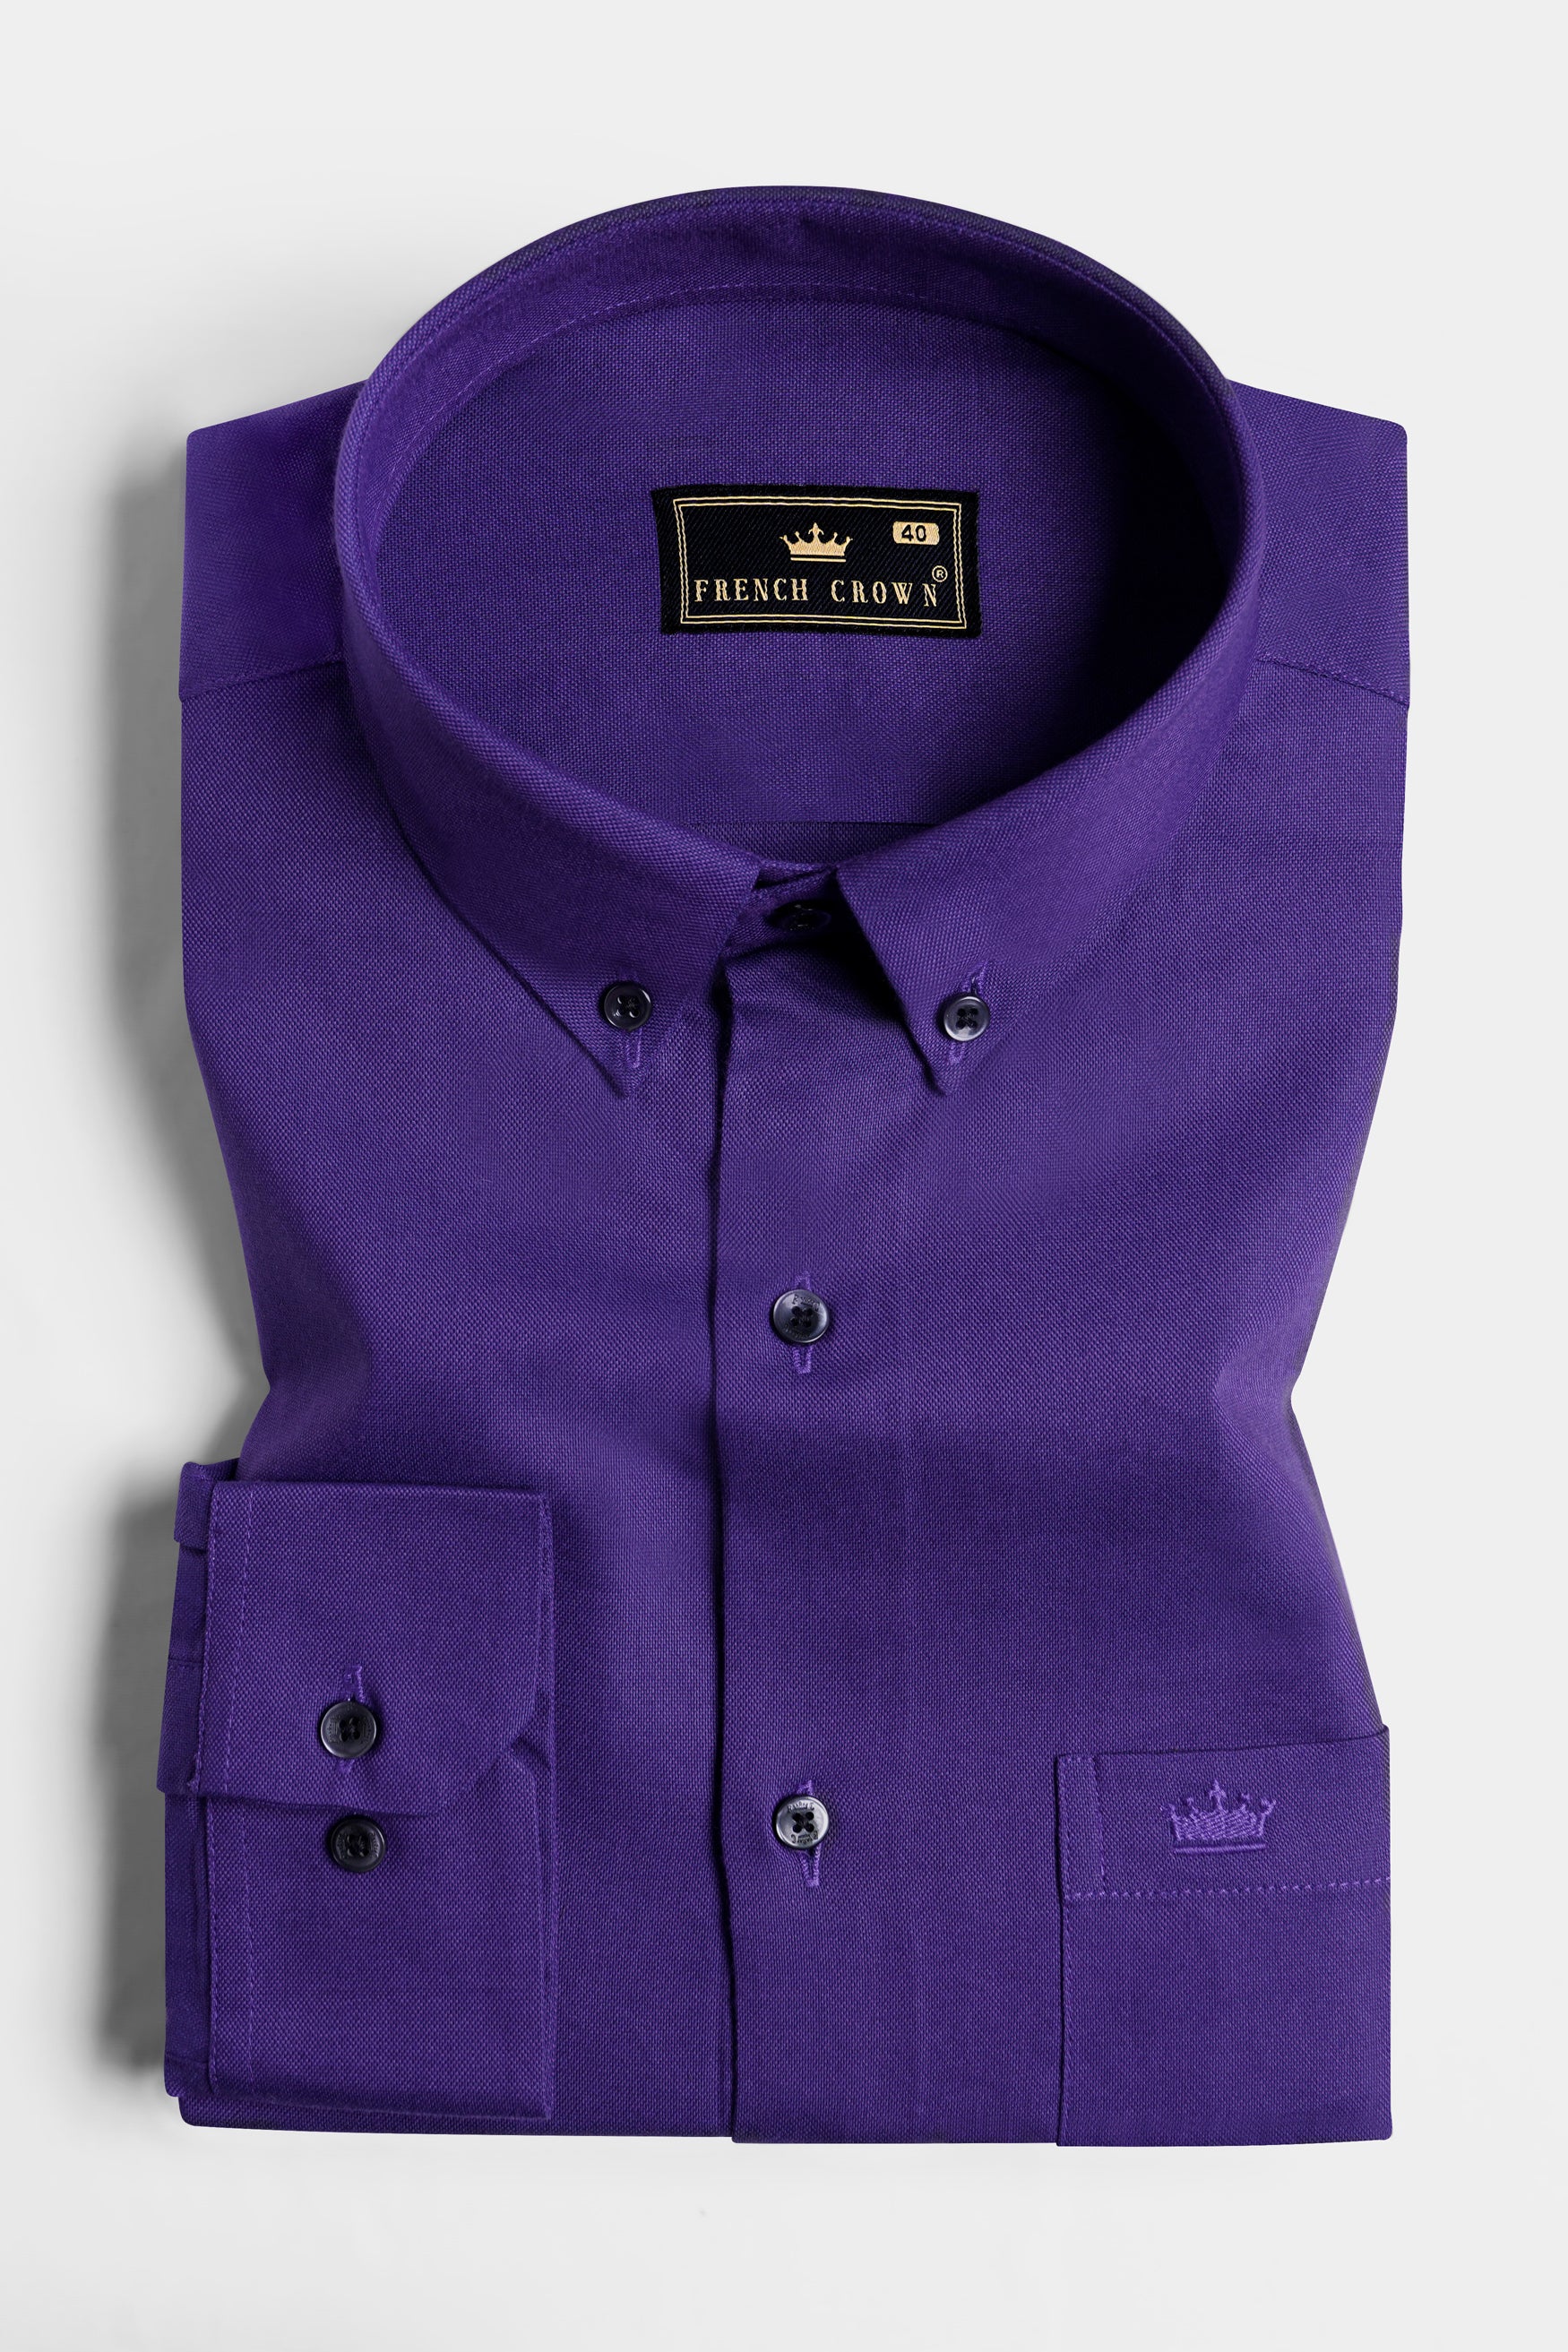 Meteorite Purple Royal Oxford Button Down Shirt